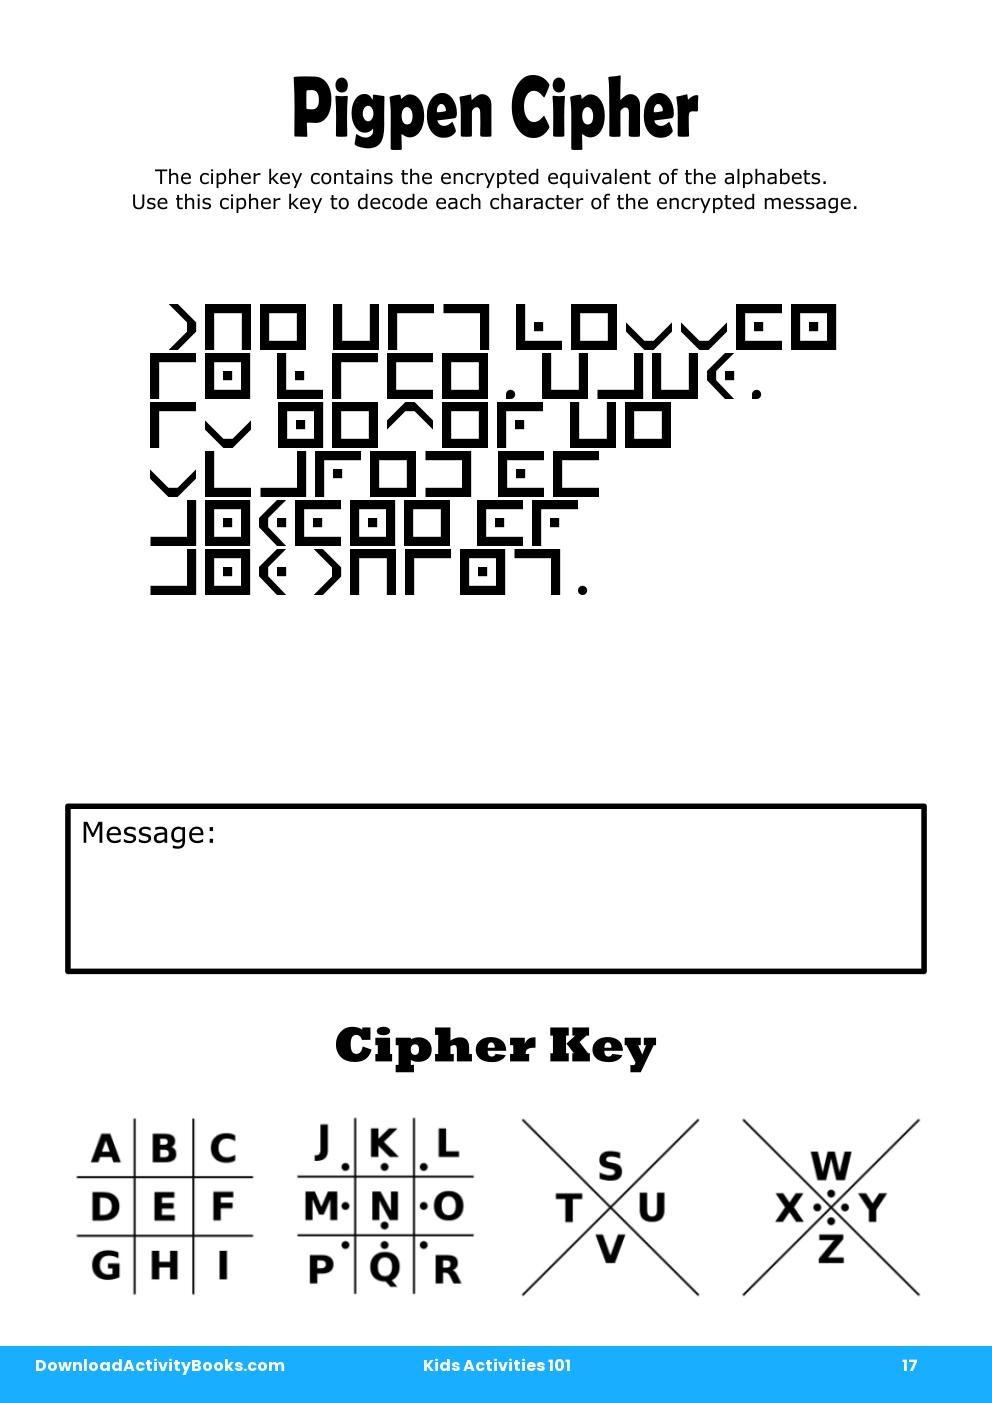 Pigpen Cipher in Kids Activities 101